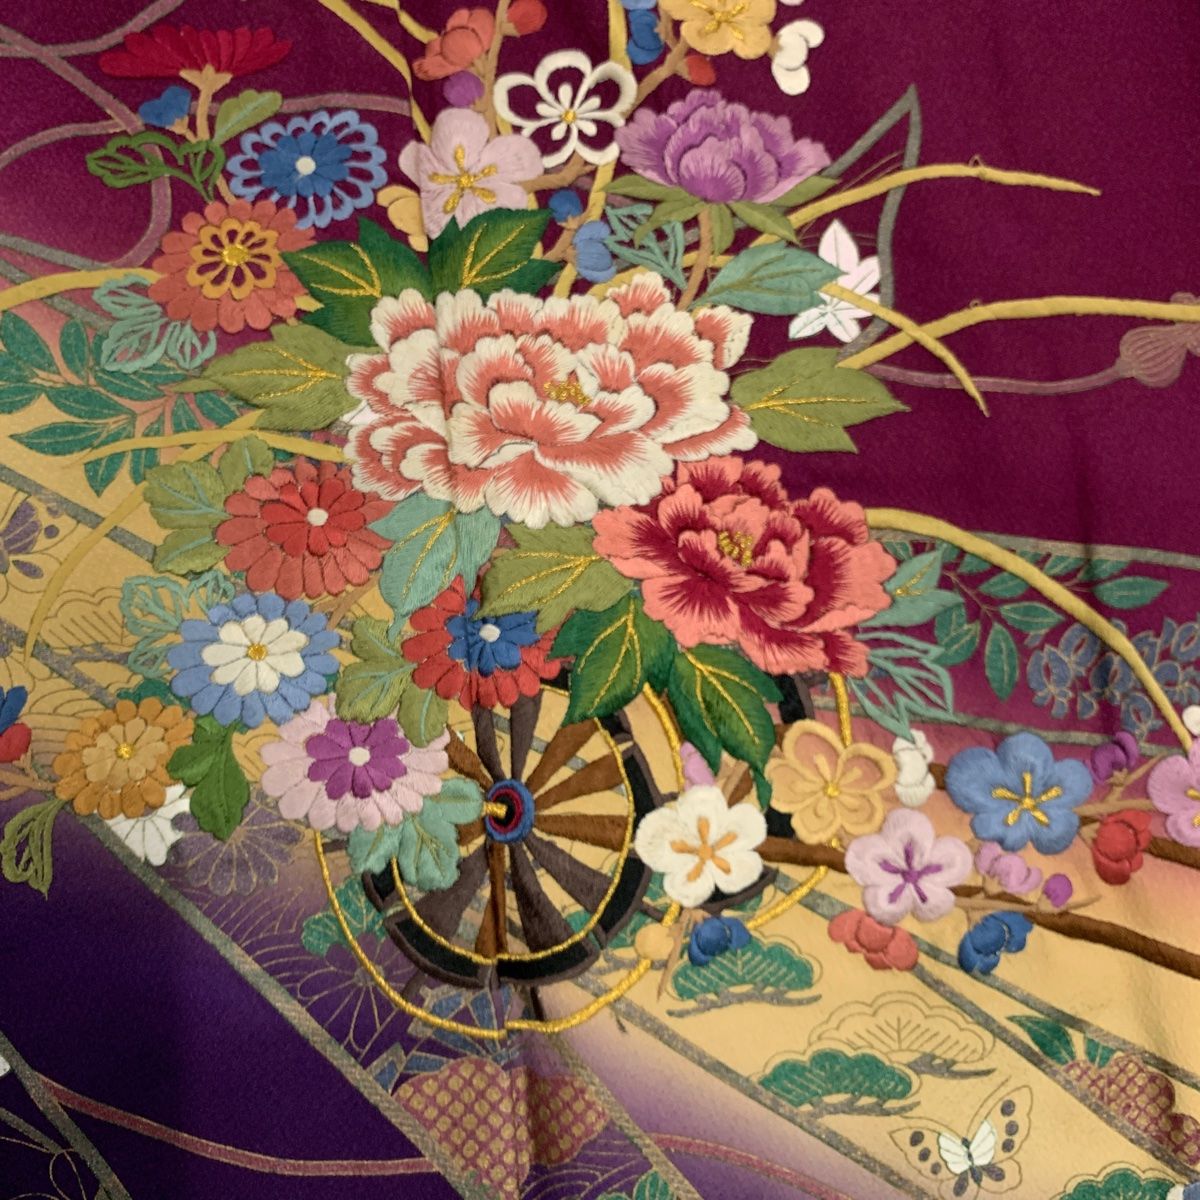 振袖 身丈160.5cm 裄丈64cm M 袷 花車 熨斗 金糸 刺繍 紫 正絹 秀品 